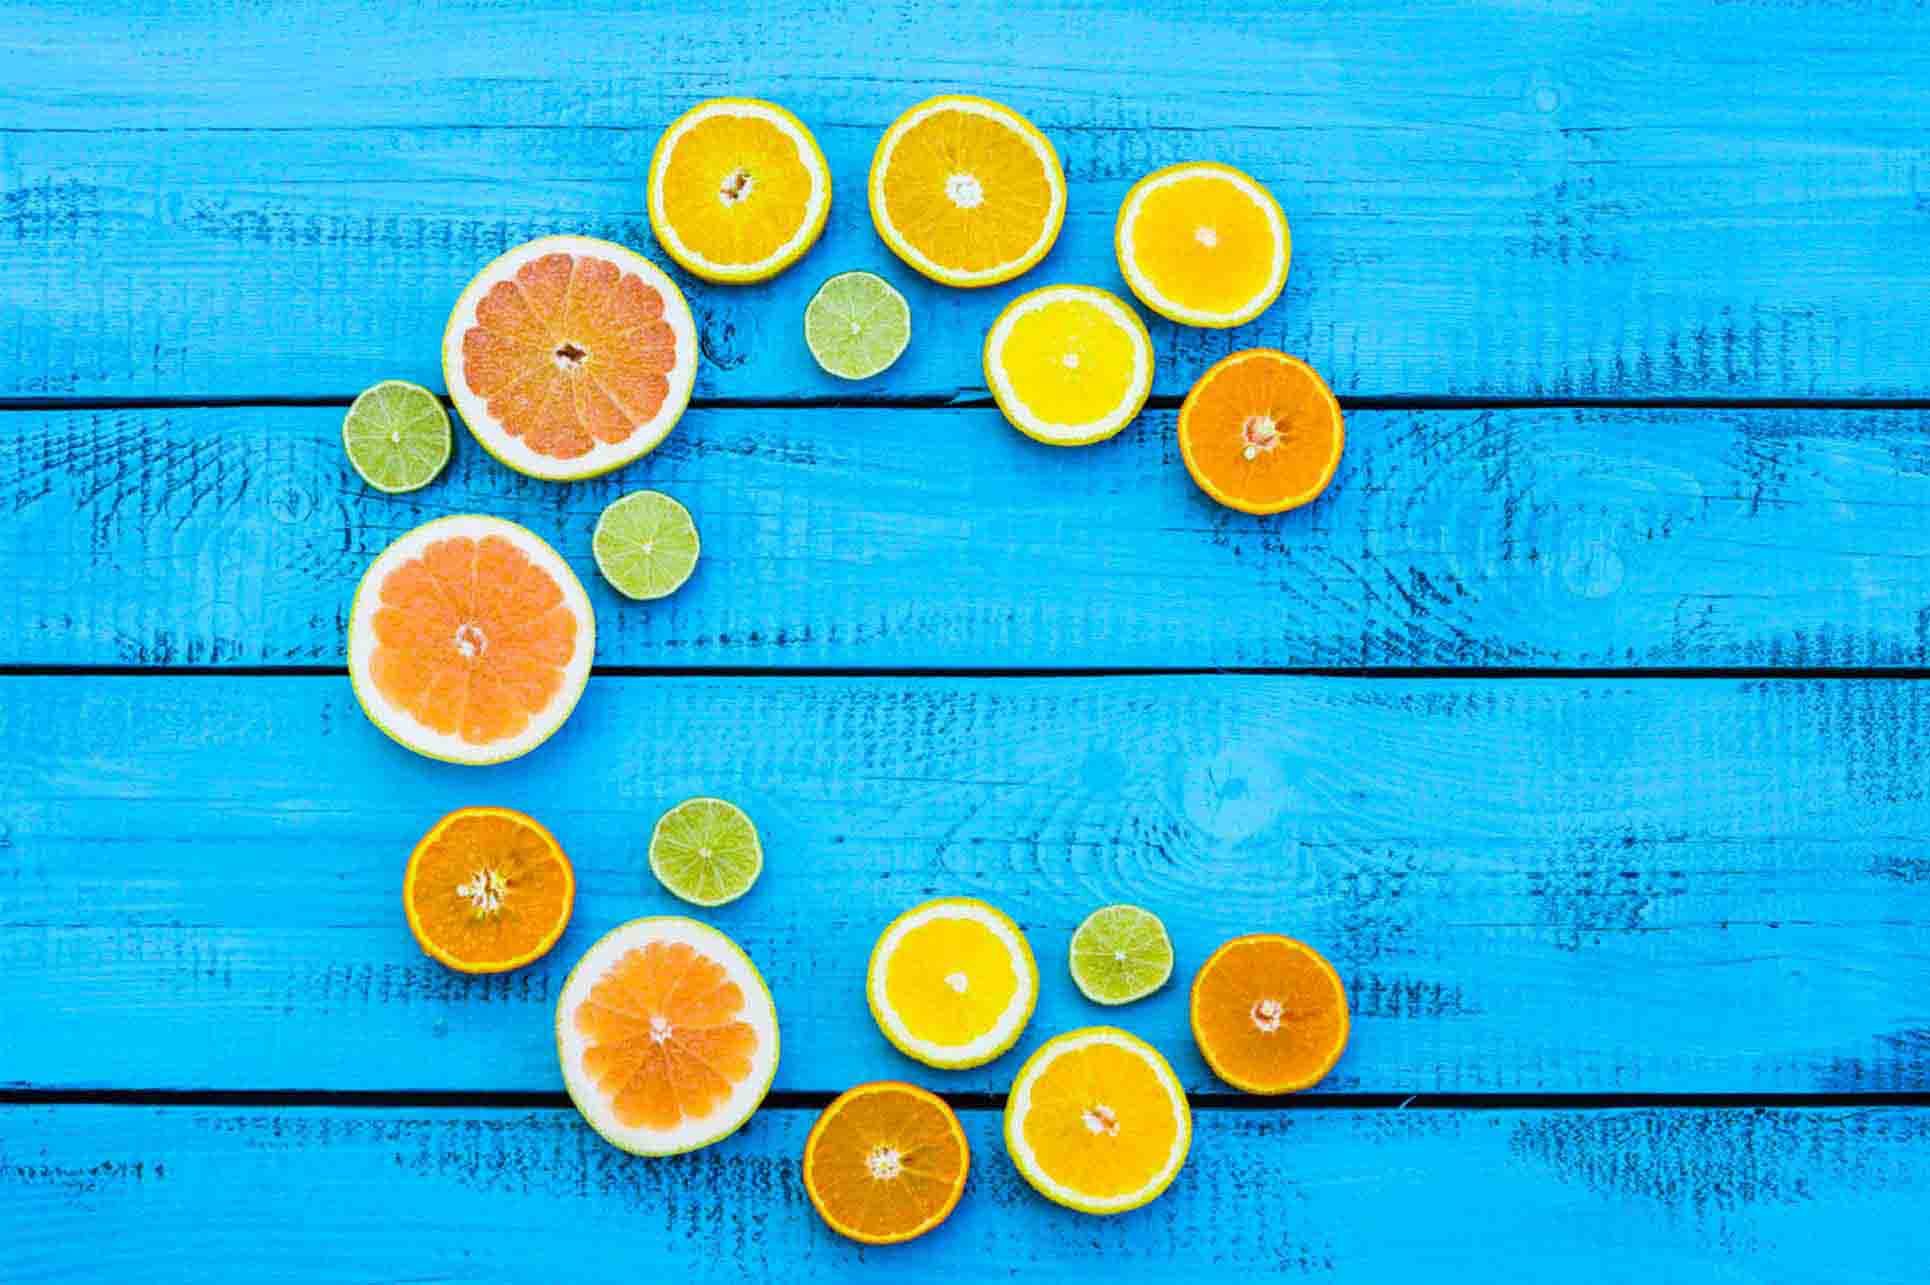 8 Skin Health Benefits of Vitamin C